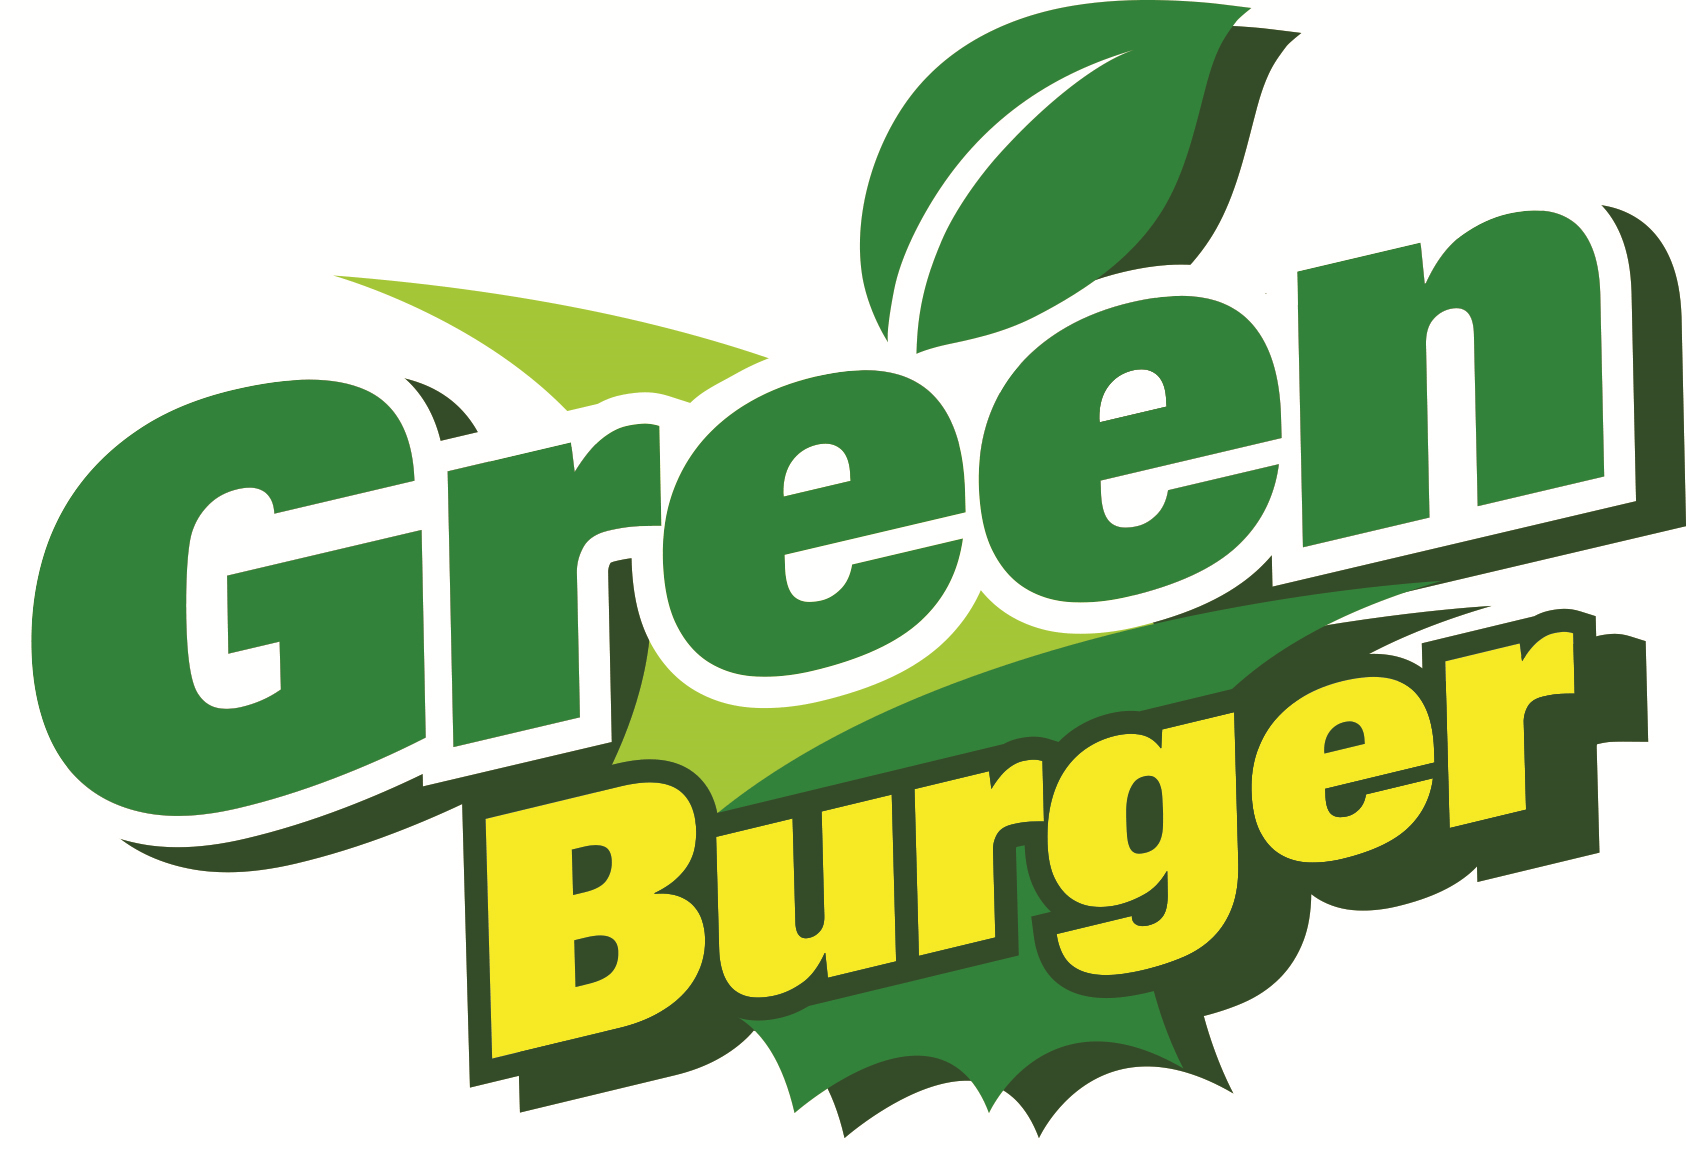 Greenburger Logo - GreenBurger Reviews. Read Customer Service Reviews of greenburger.dk